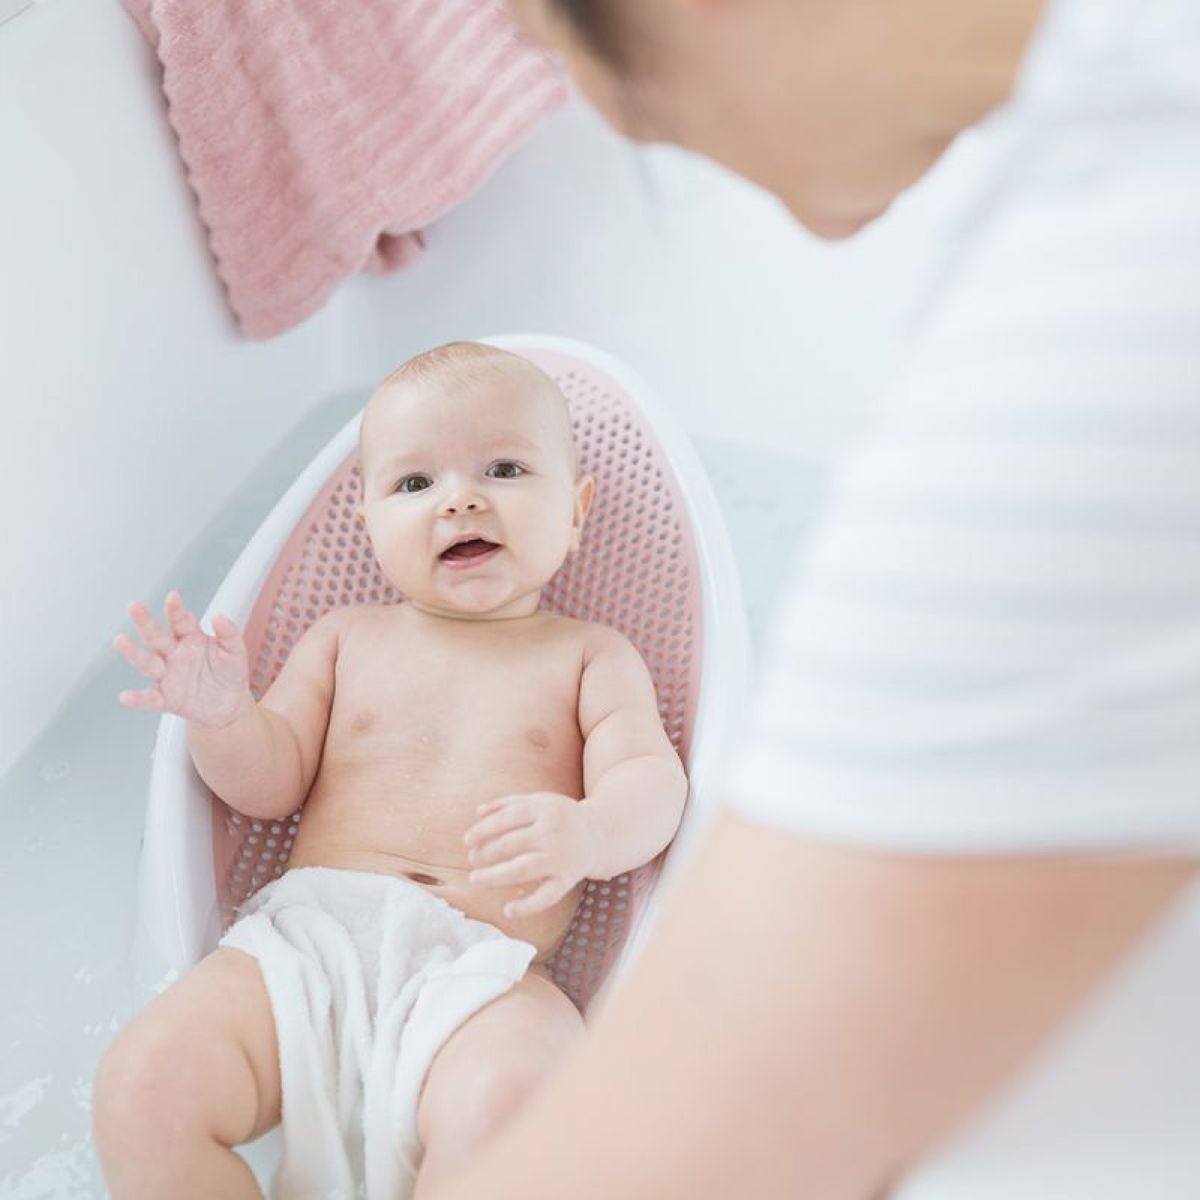 Transat de bain pour bébé : Comment le choisir ?